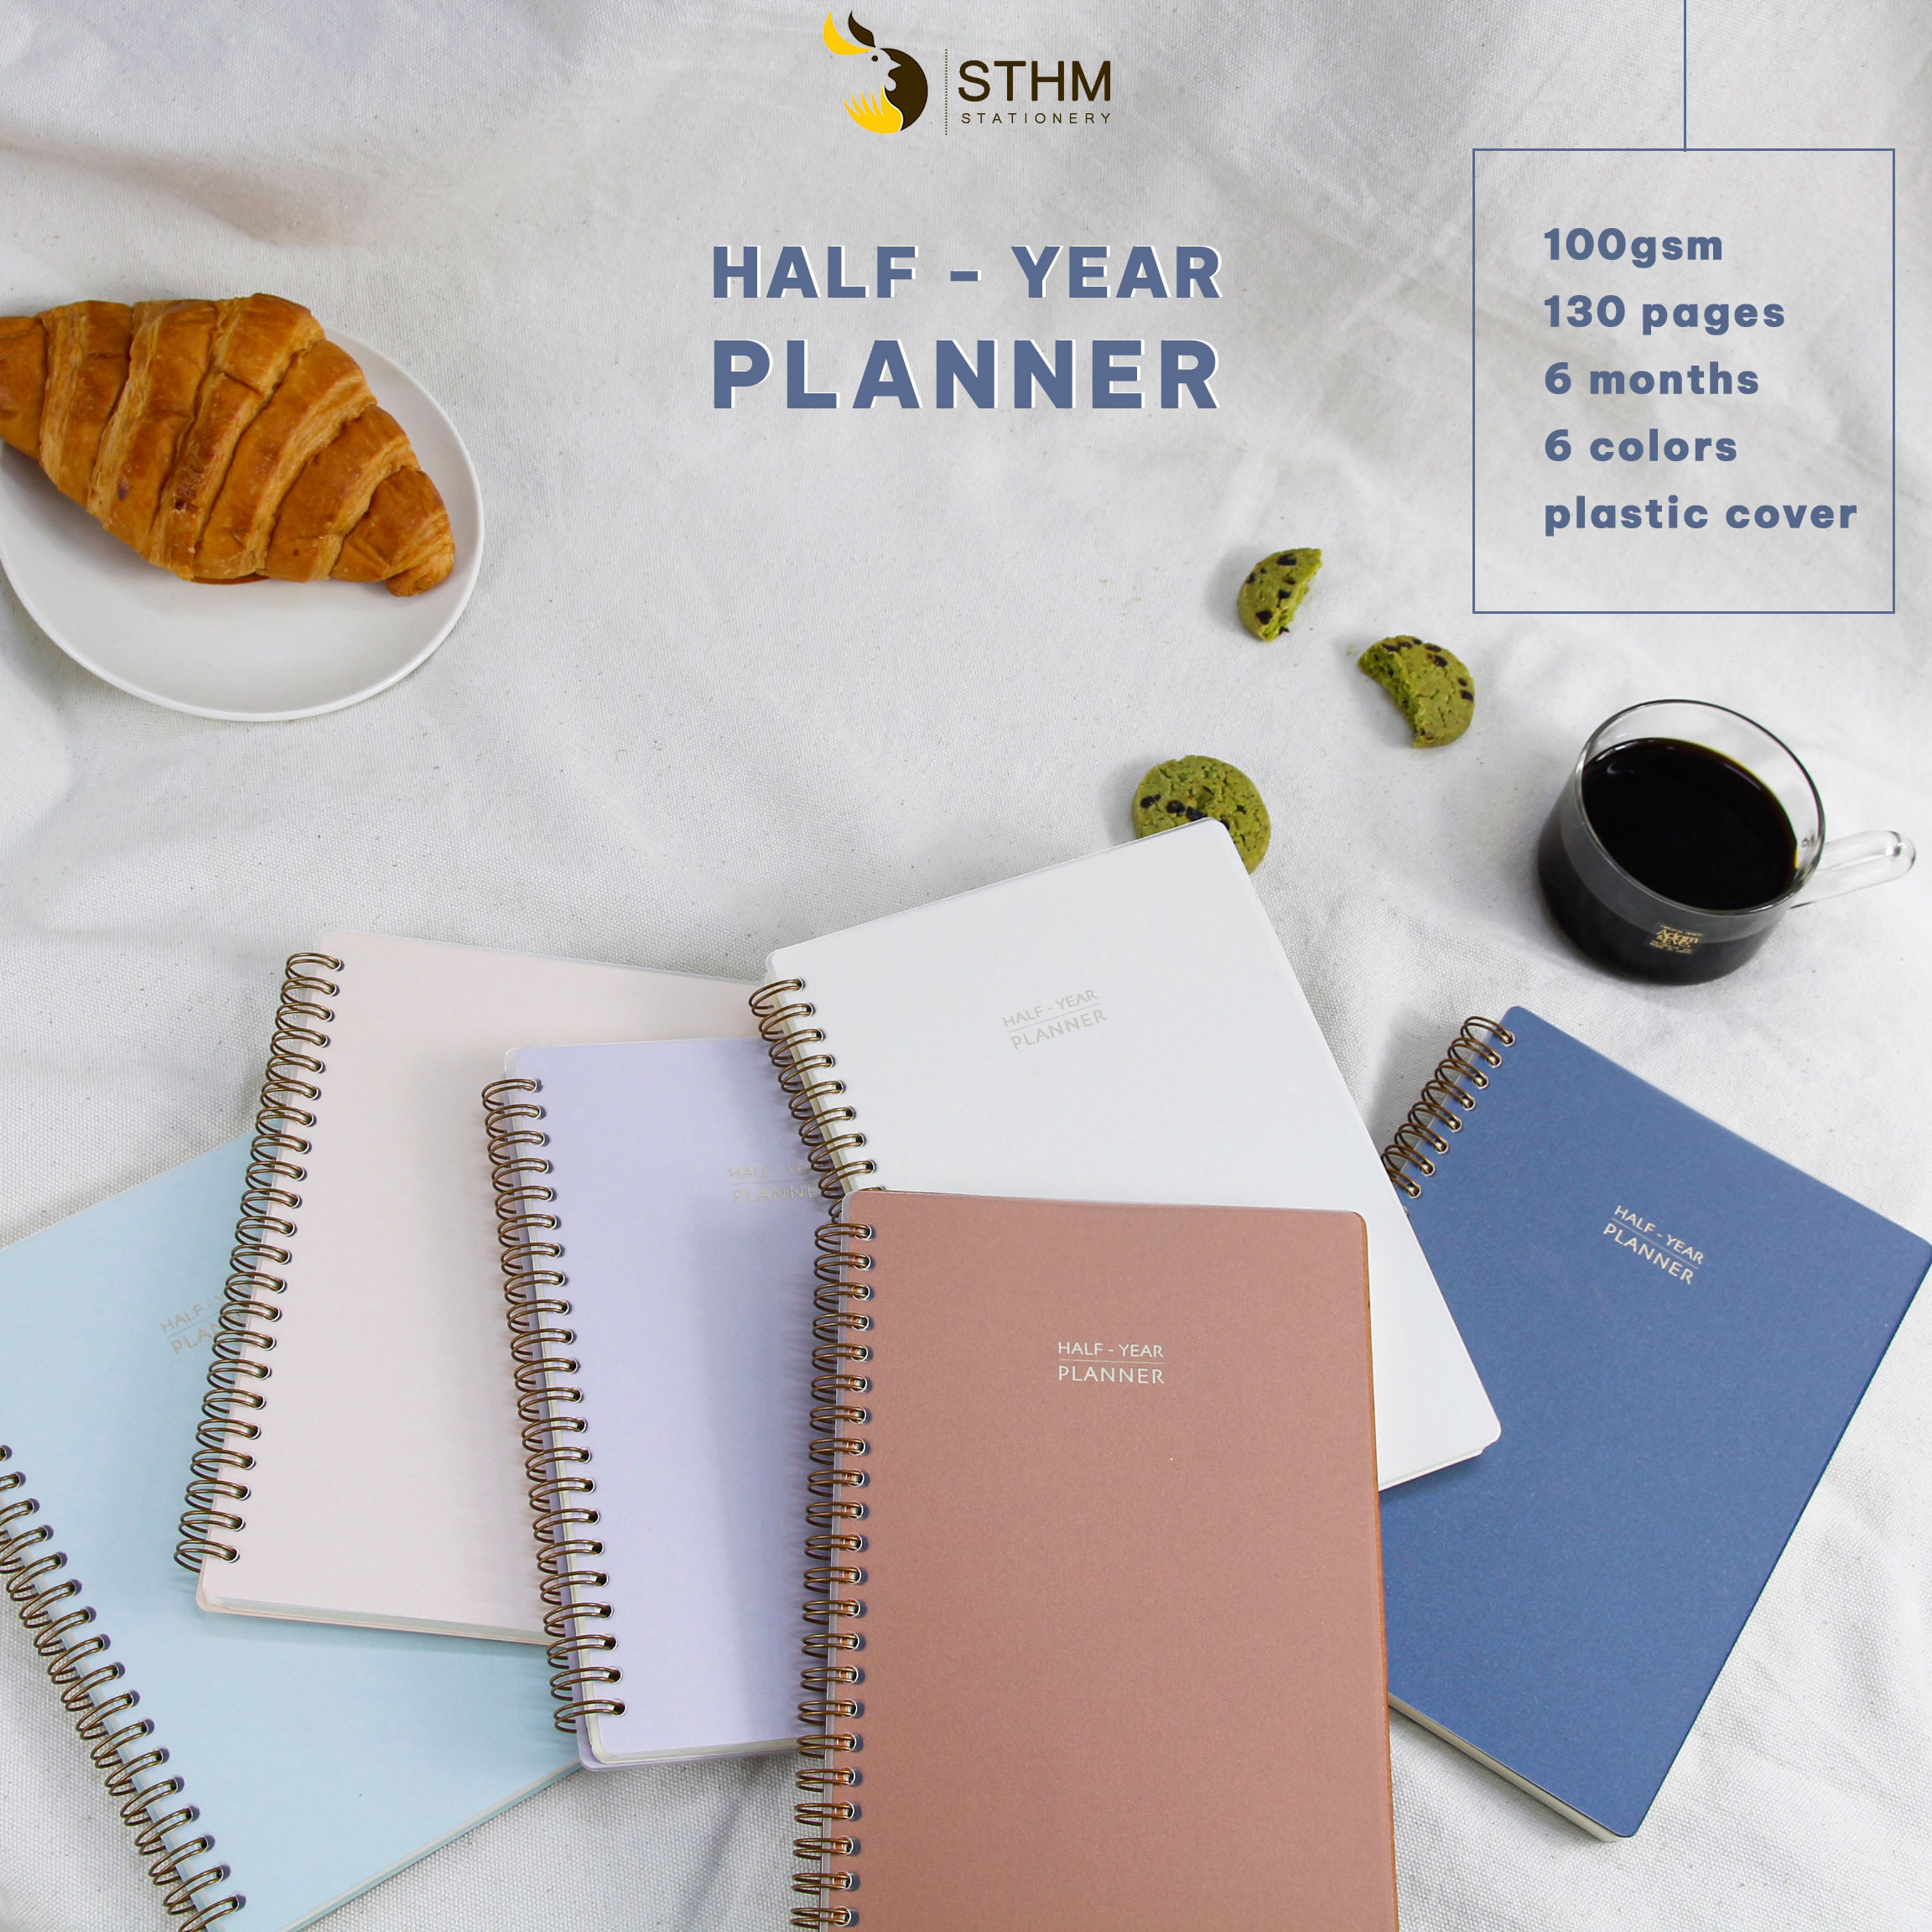 Half - year planner - Sổ tay lập kế hoạch 6 tháng - [STHM stationery